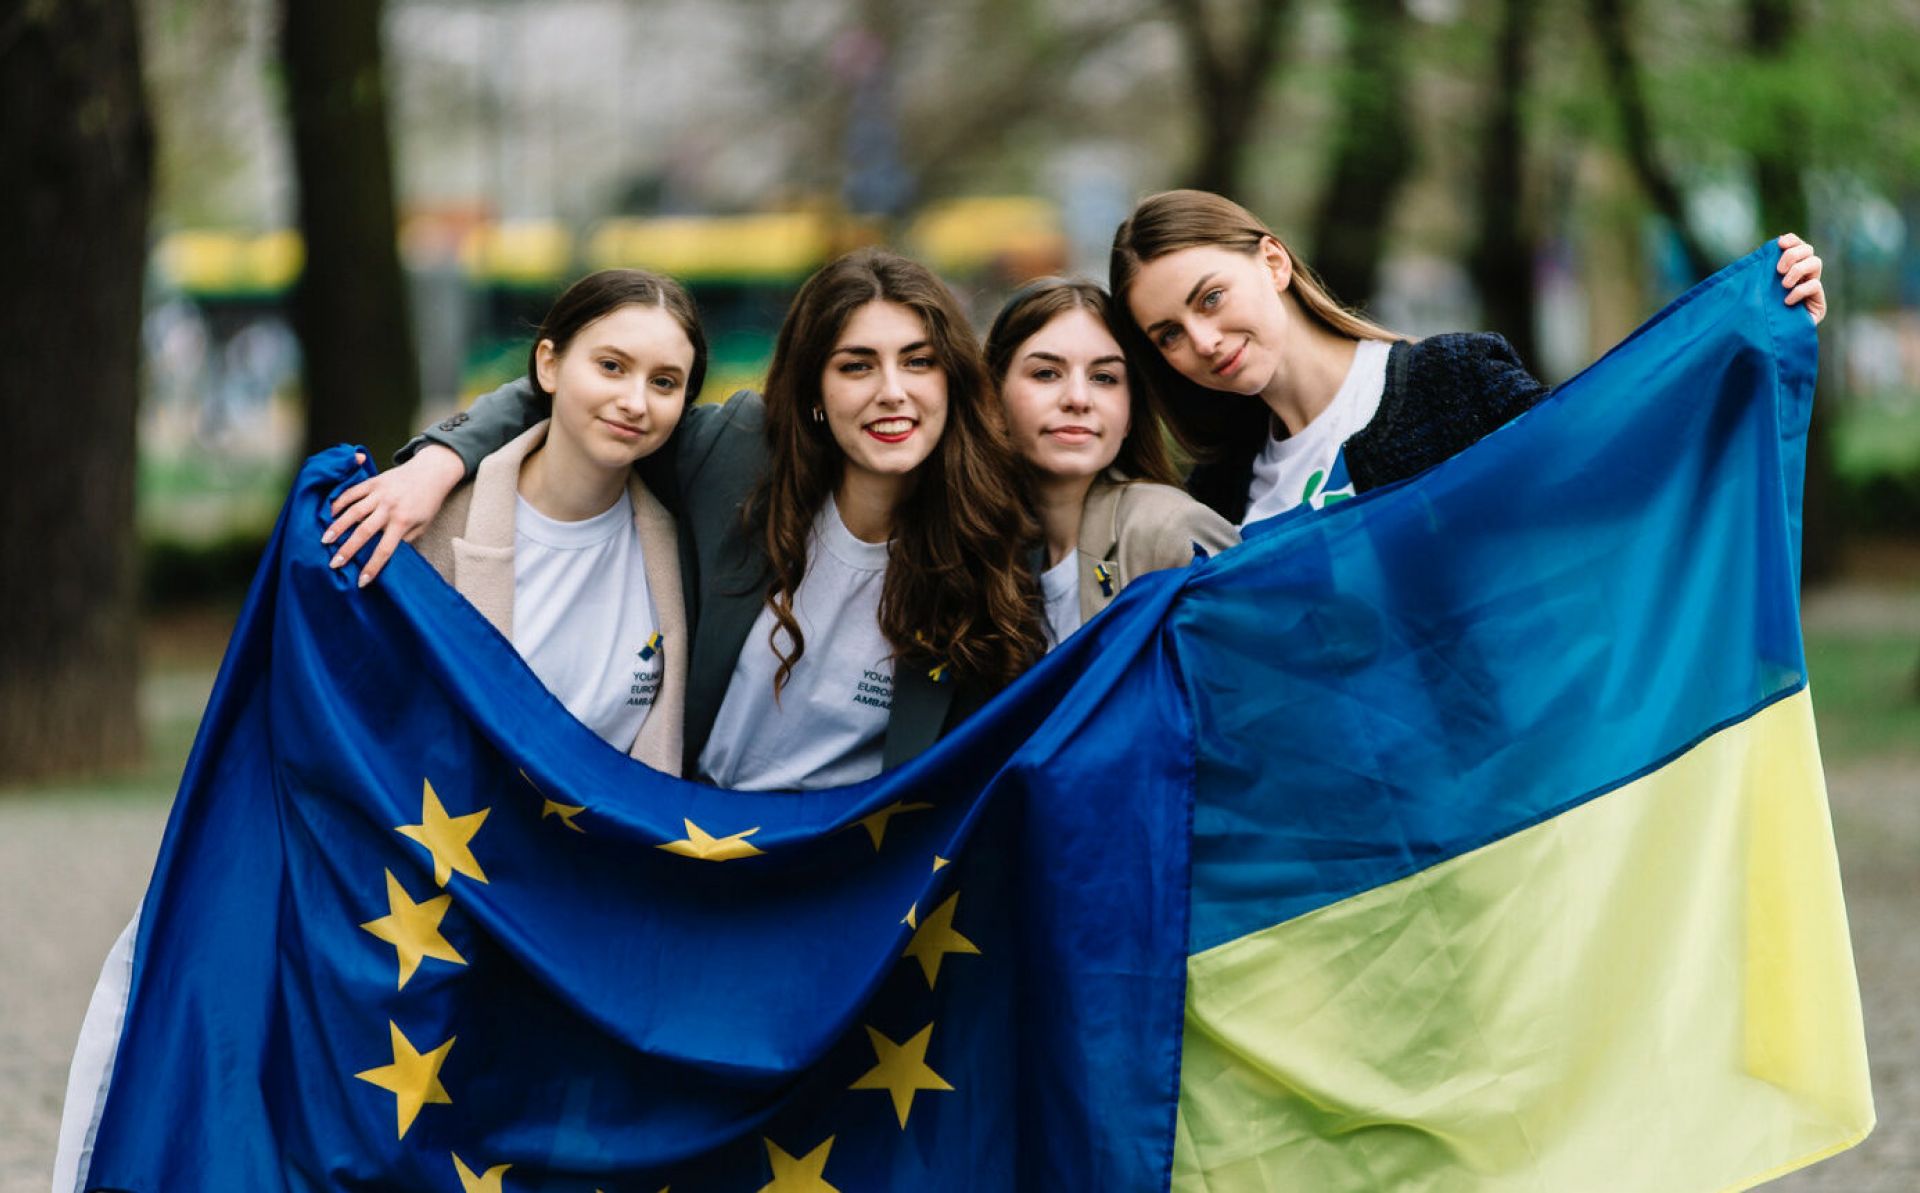 Ukrainian refugees: EU member states agree to extend temporary protection